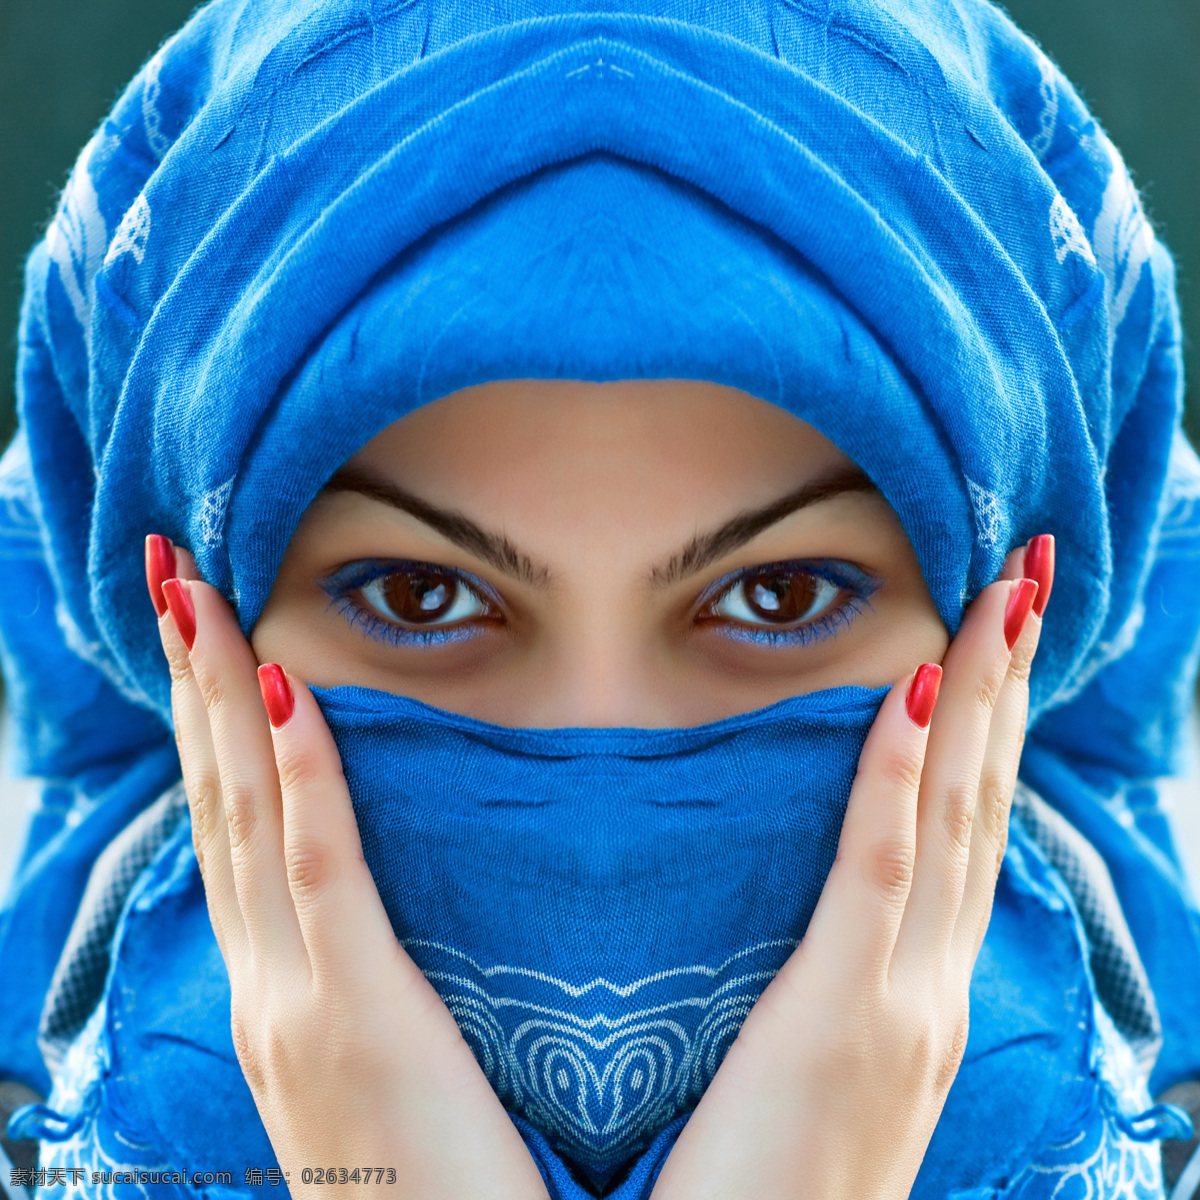 蓝色 围巾 下 美女图片 蓝色围巾 蒙面 美女 女人 眼睛 外国人物 人体器官图 人物图片